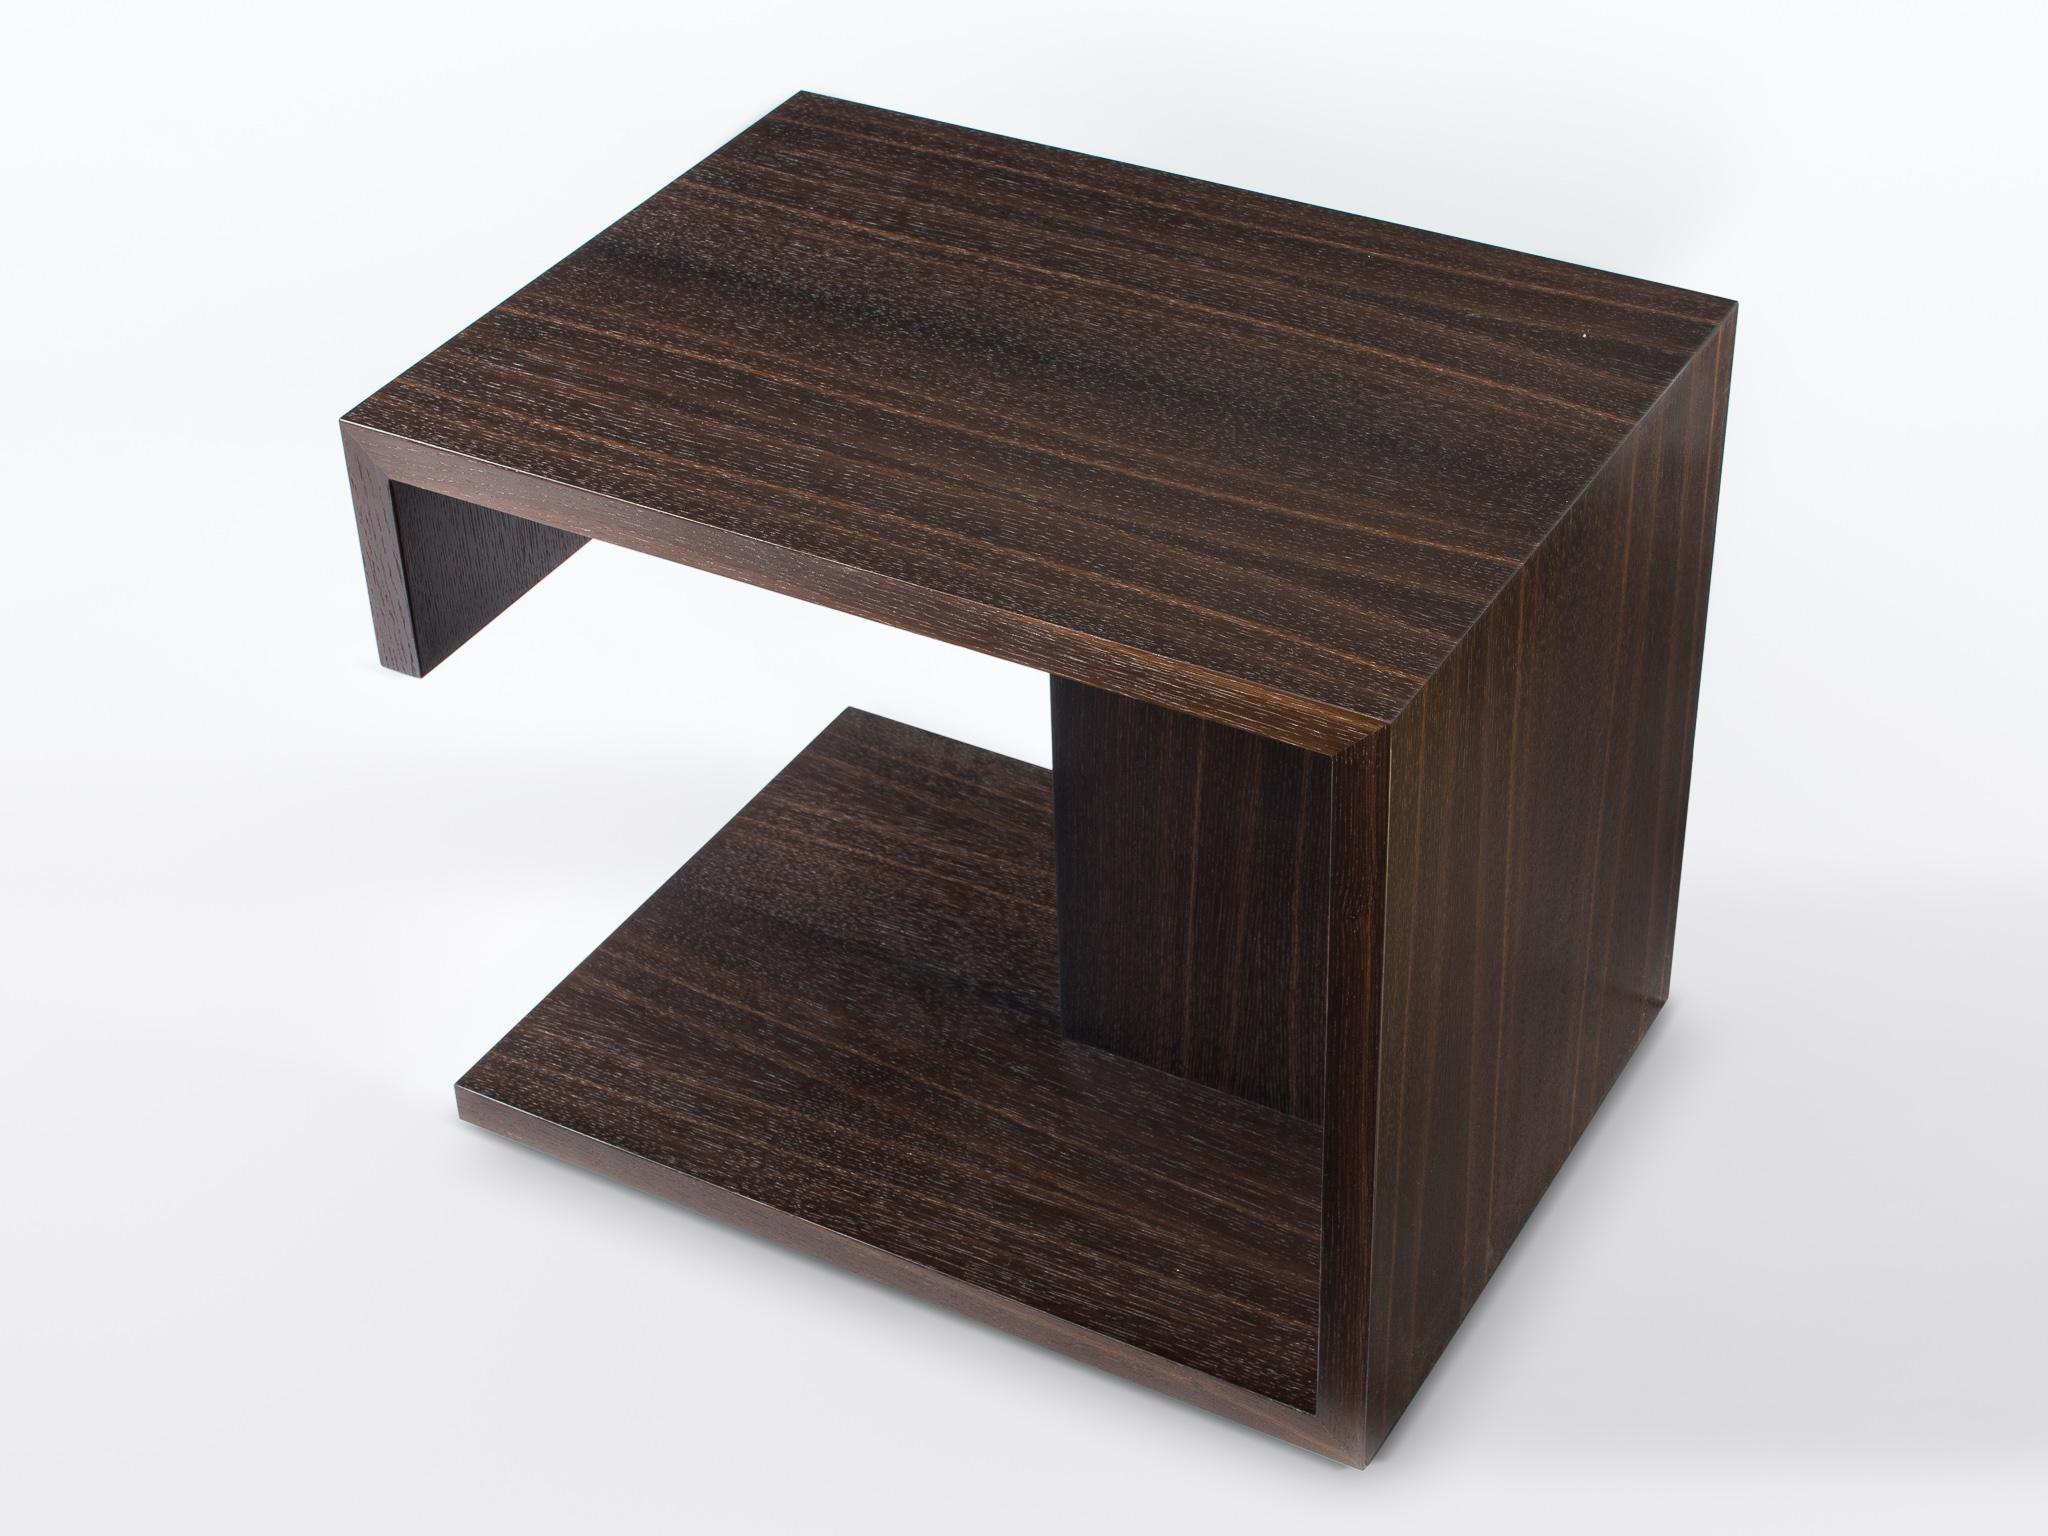 American Modern Wood End Table in Fumed Ebony Oak, by Studio DiPaolo For Sale